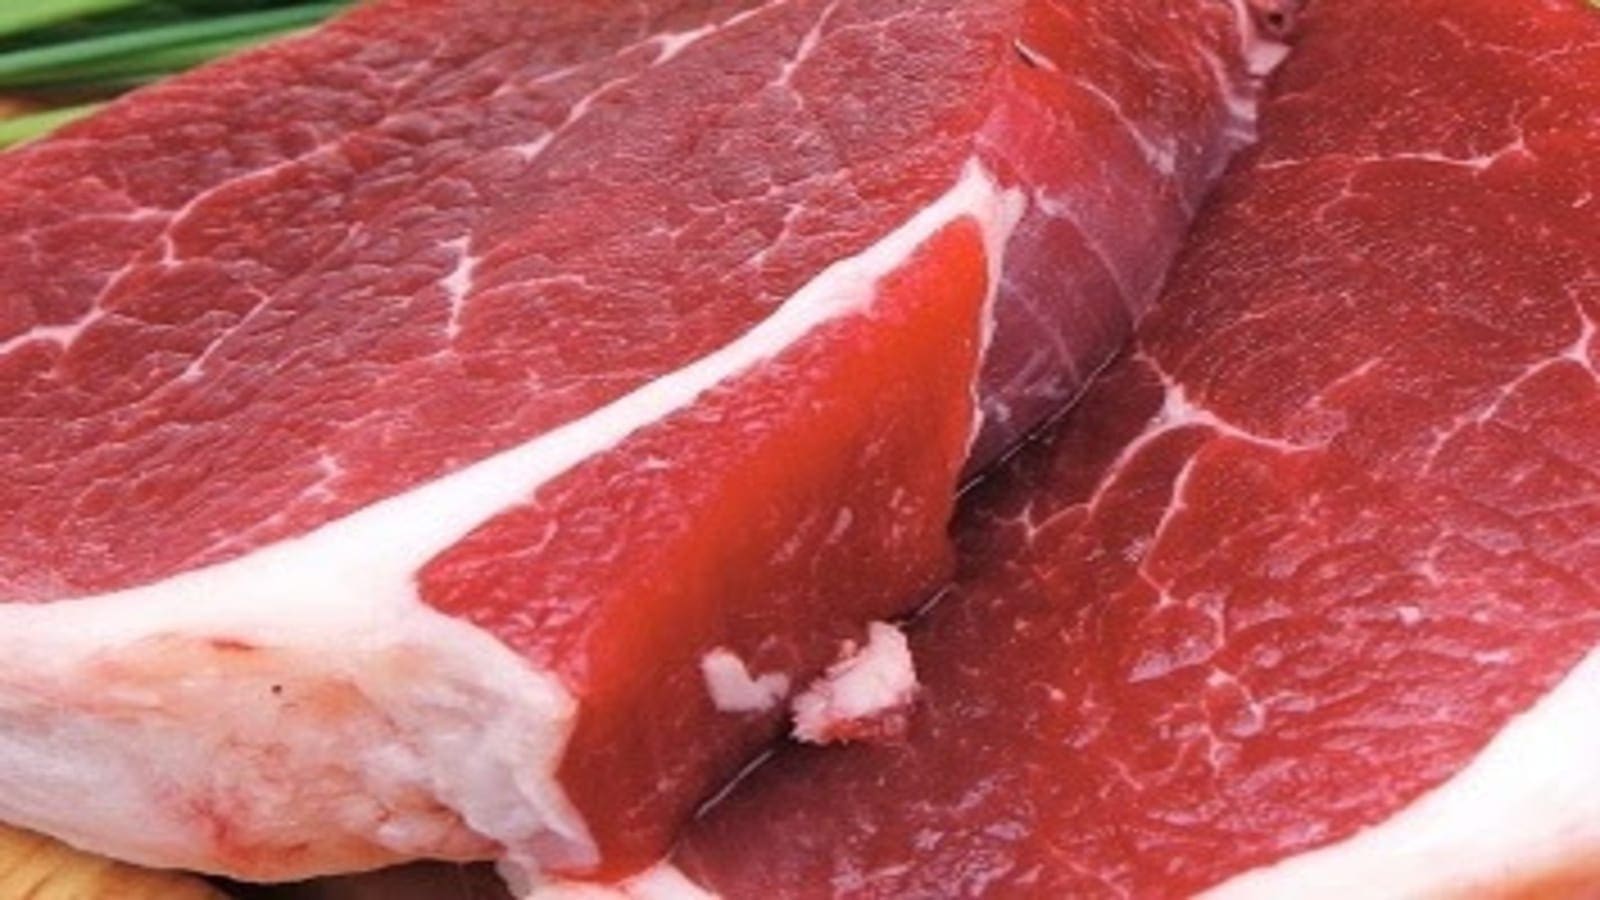 Ethiopia aims for US$135M meat export revenue